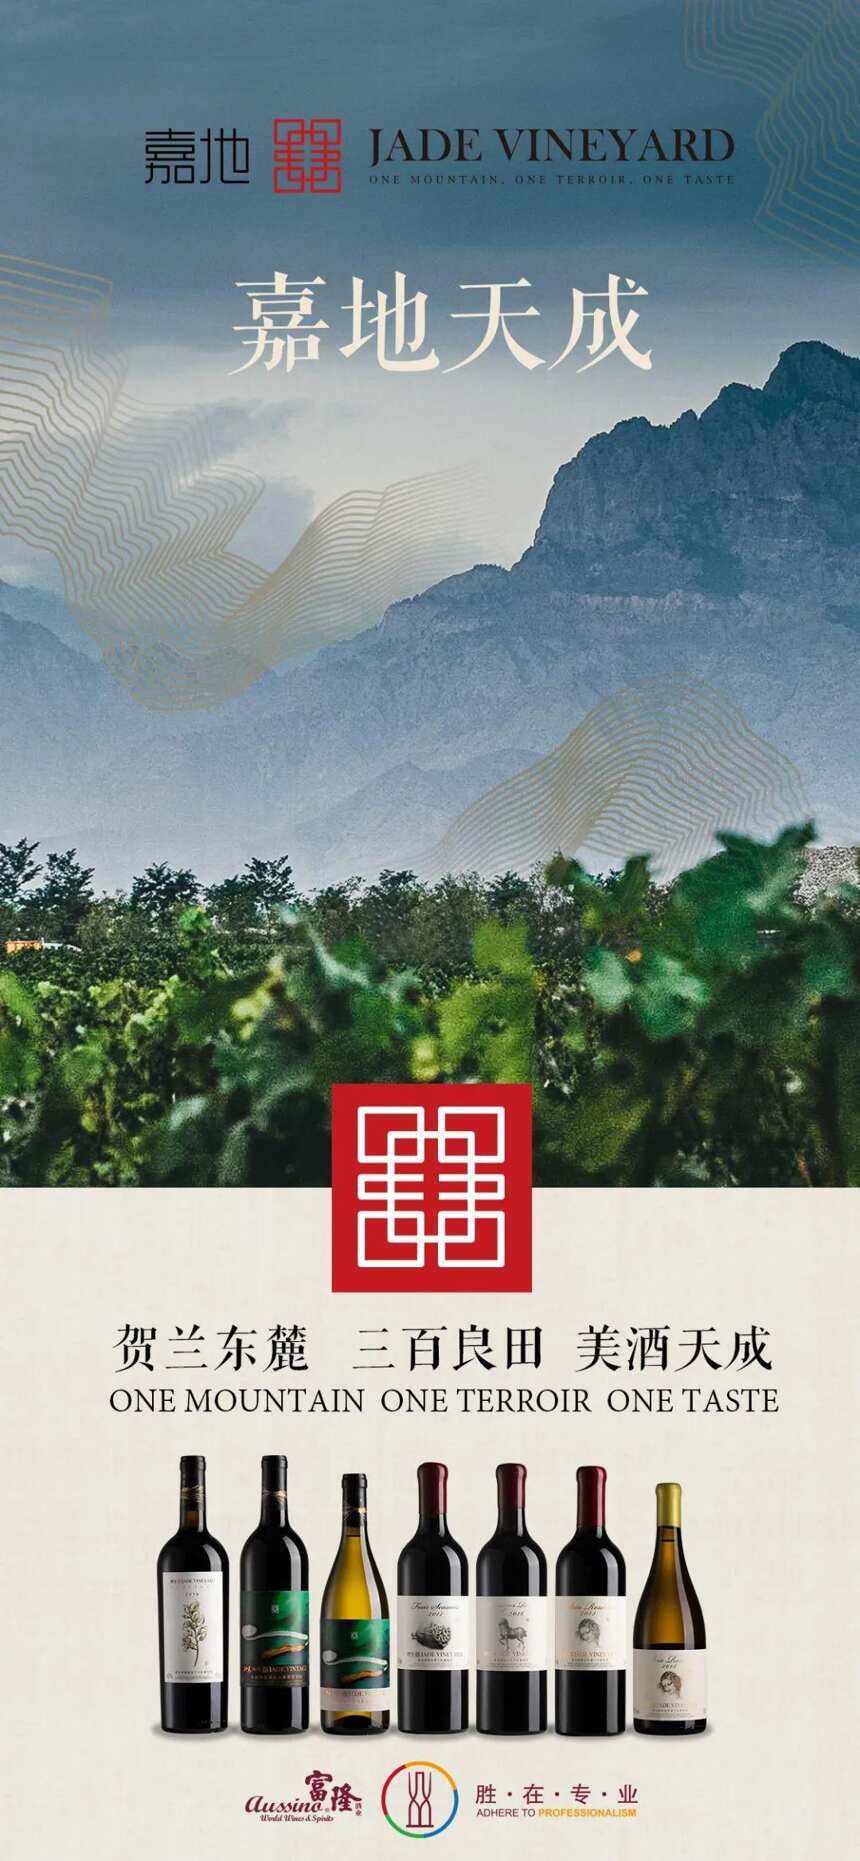 用本土葡萄生产的“中国版奔富”，你买不买账？| 富隆酒业